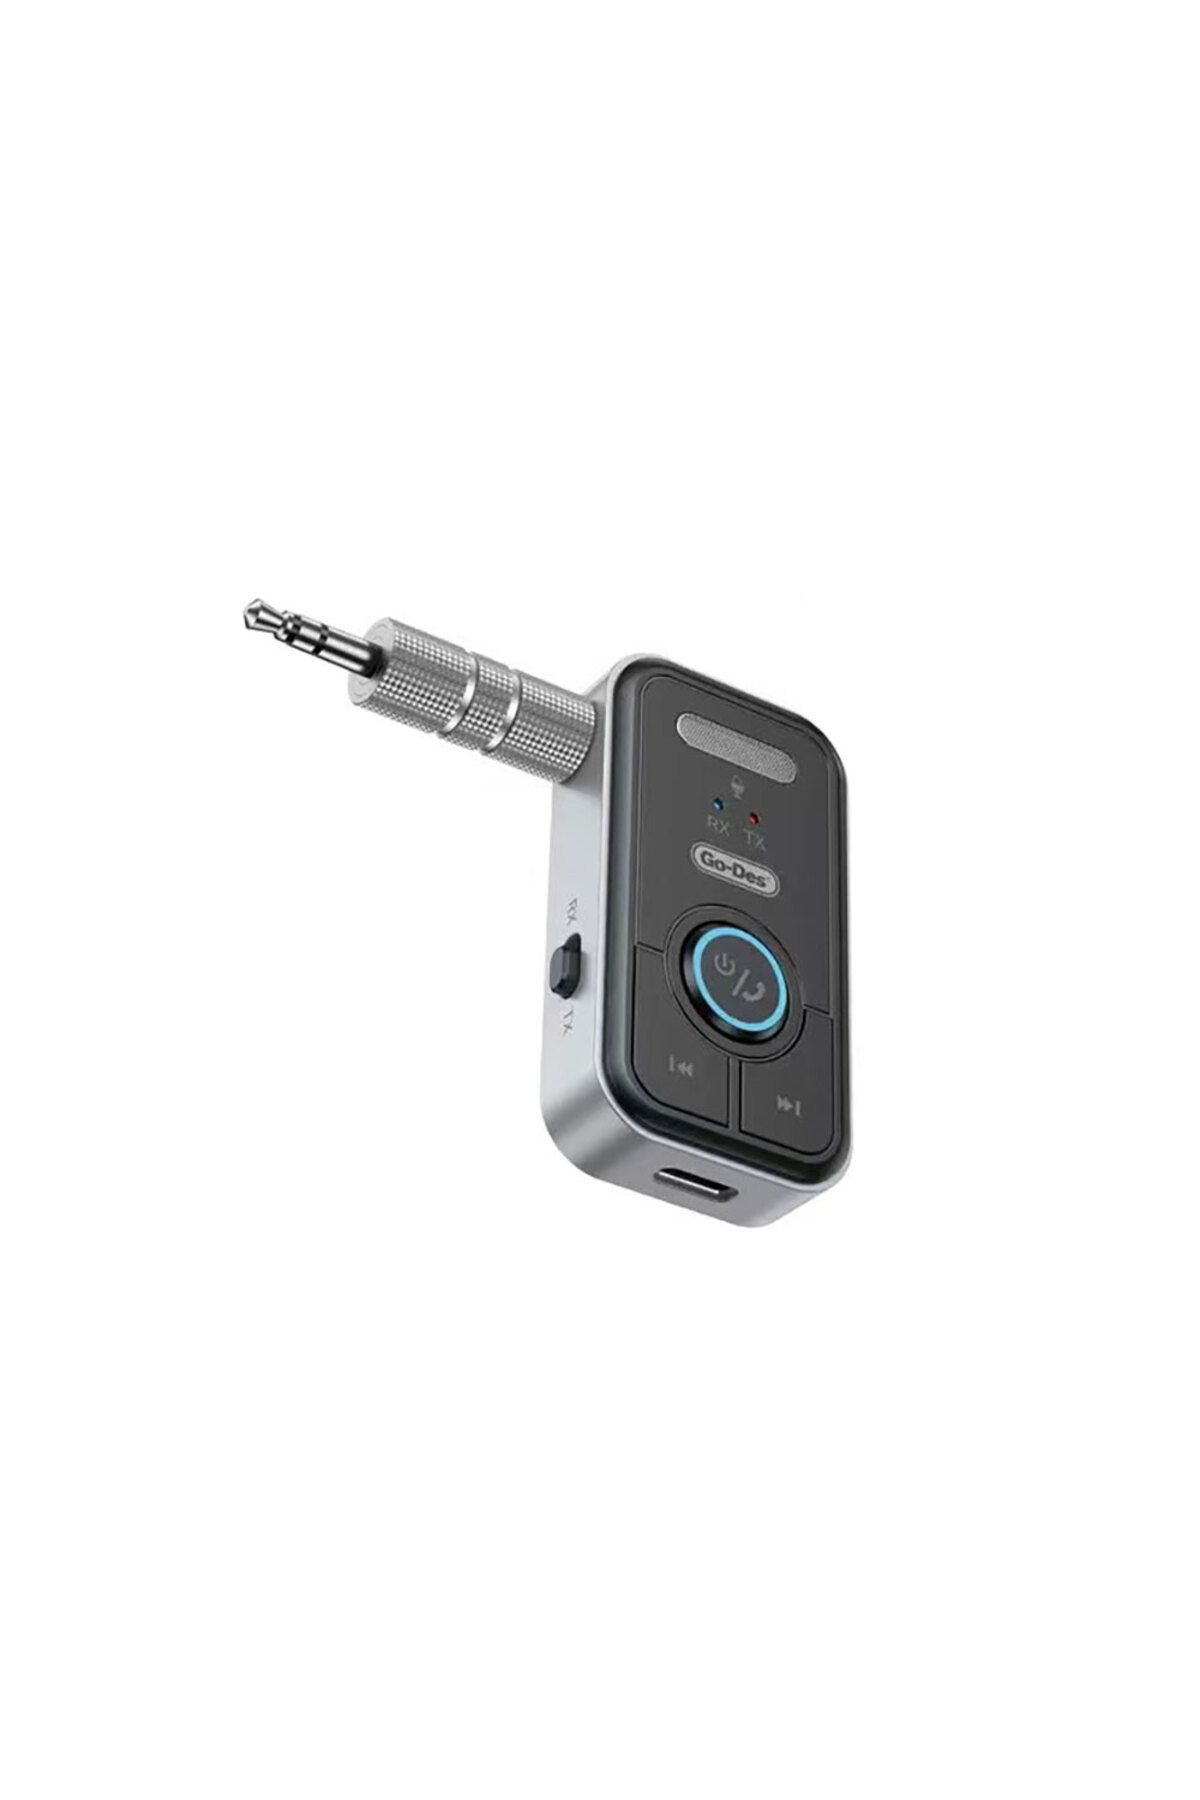 Go-Des Kablosuz Ses Alıcı Aux Girişli Bluetooth Receiver Go Des GD-BT206 Bluetooth Adaptör V5.3